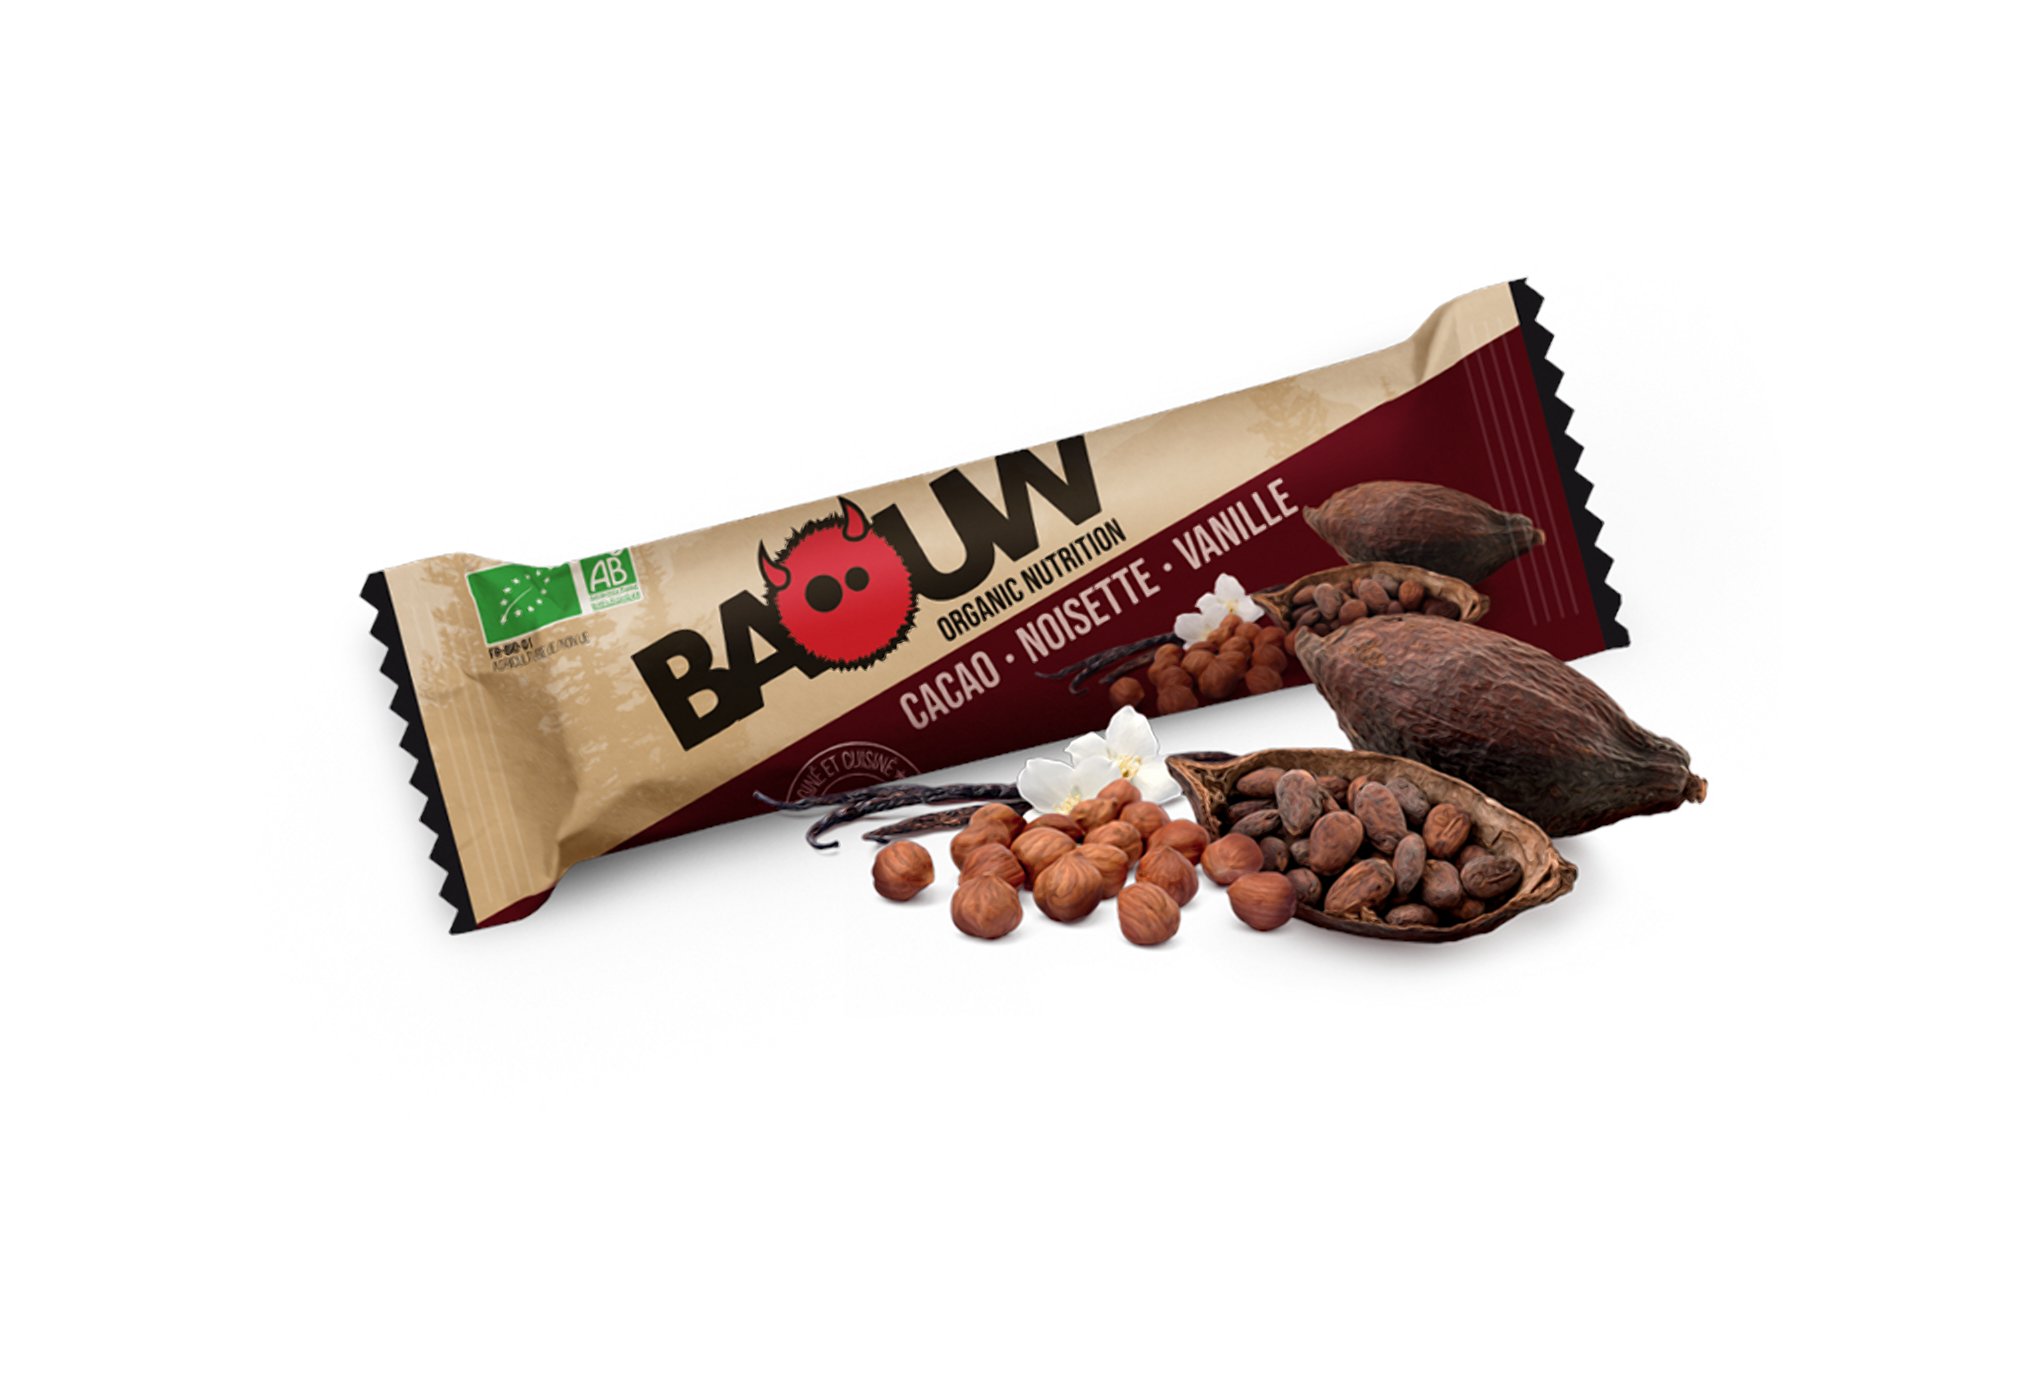 Baouw Barre nutritionnelle bio - Cacao - Noisette - Vanille Diététique Barres